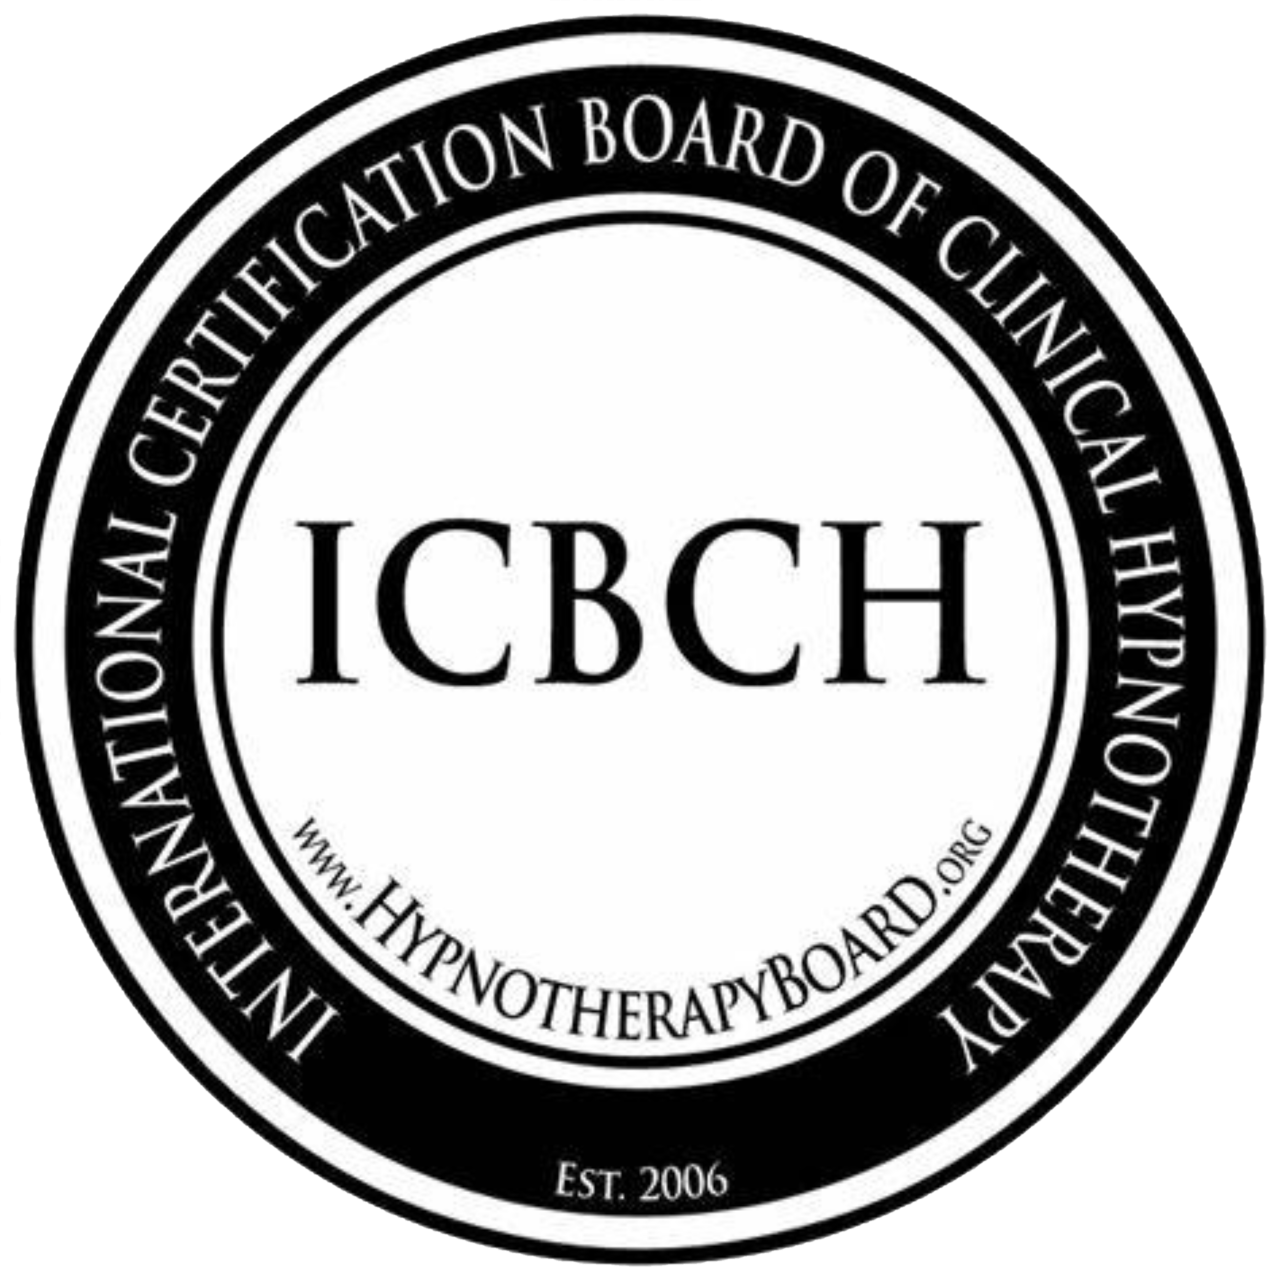 ICBCH Logo